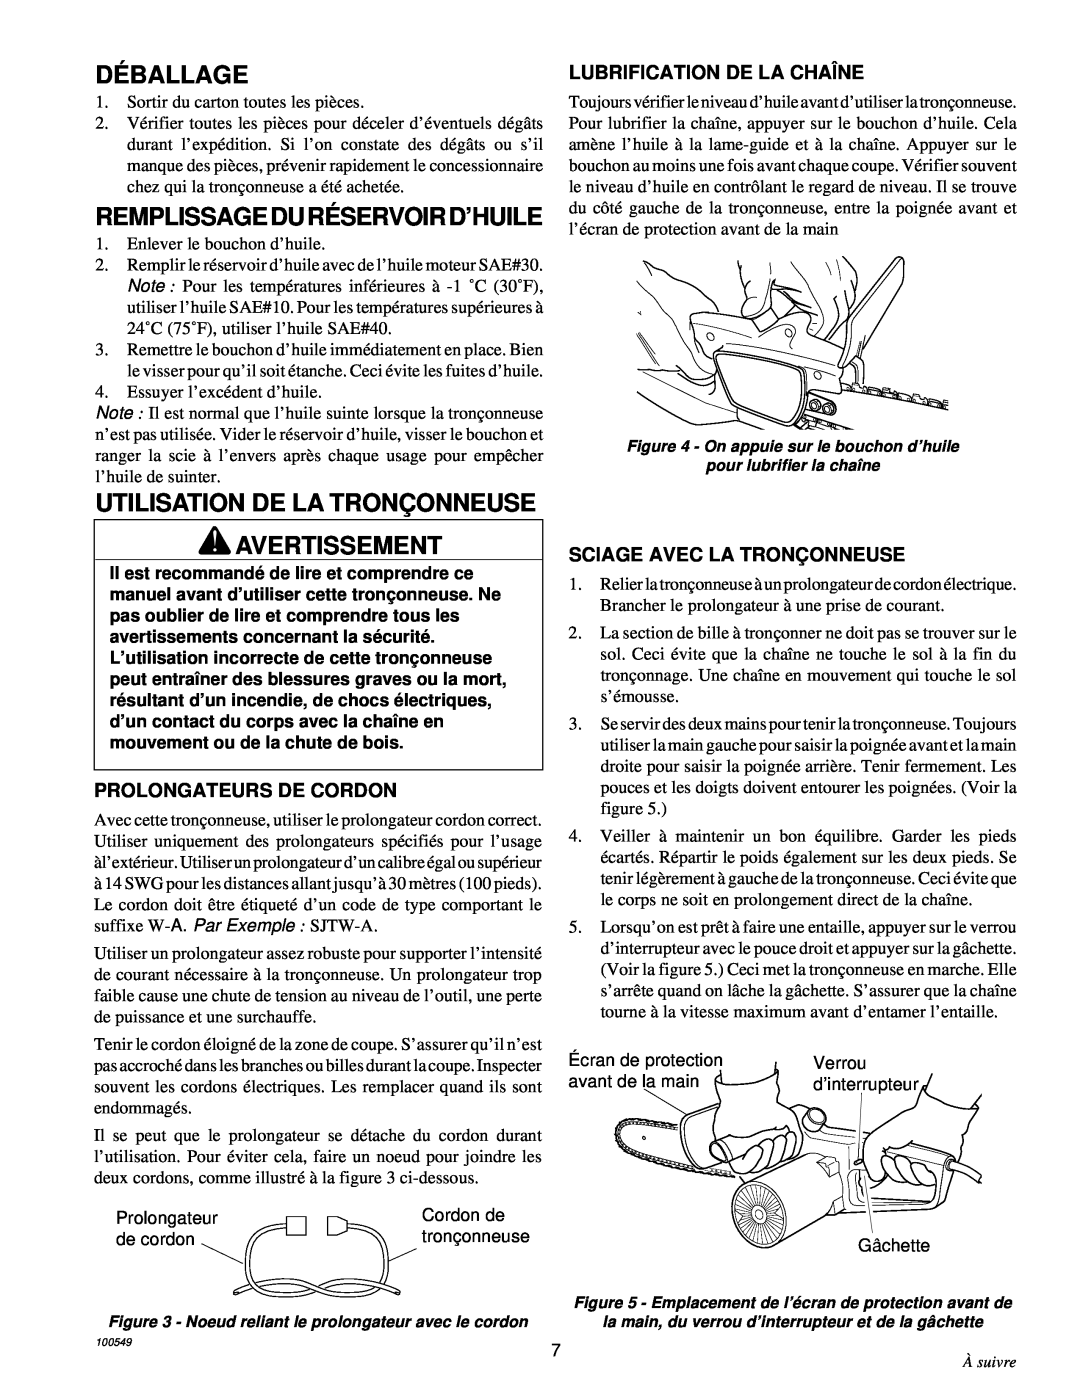 MasterCraft 100524-01, CS-120CB Dé Ballage, Remplissageduré Servoird’Huile, Utilisation De La Tronç Onneuse Avertissement 